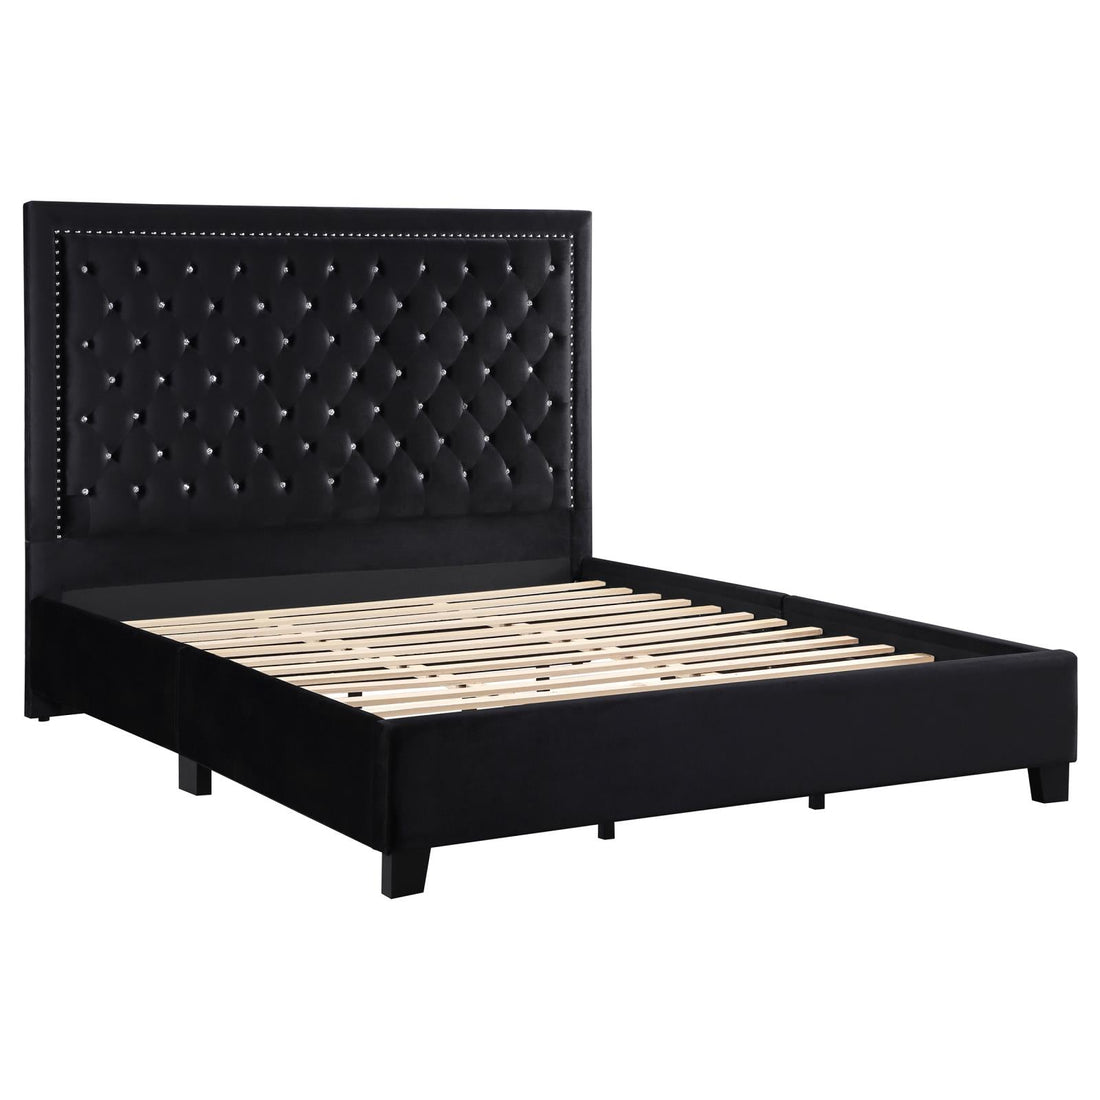 Hailey Upholstered Tufted Platform Queen Bed Black - 315925Q - Bien Home Furniture &amp; Electronics